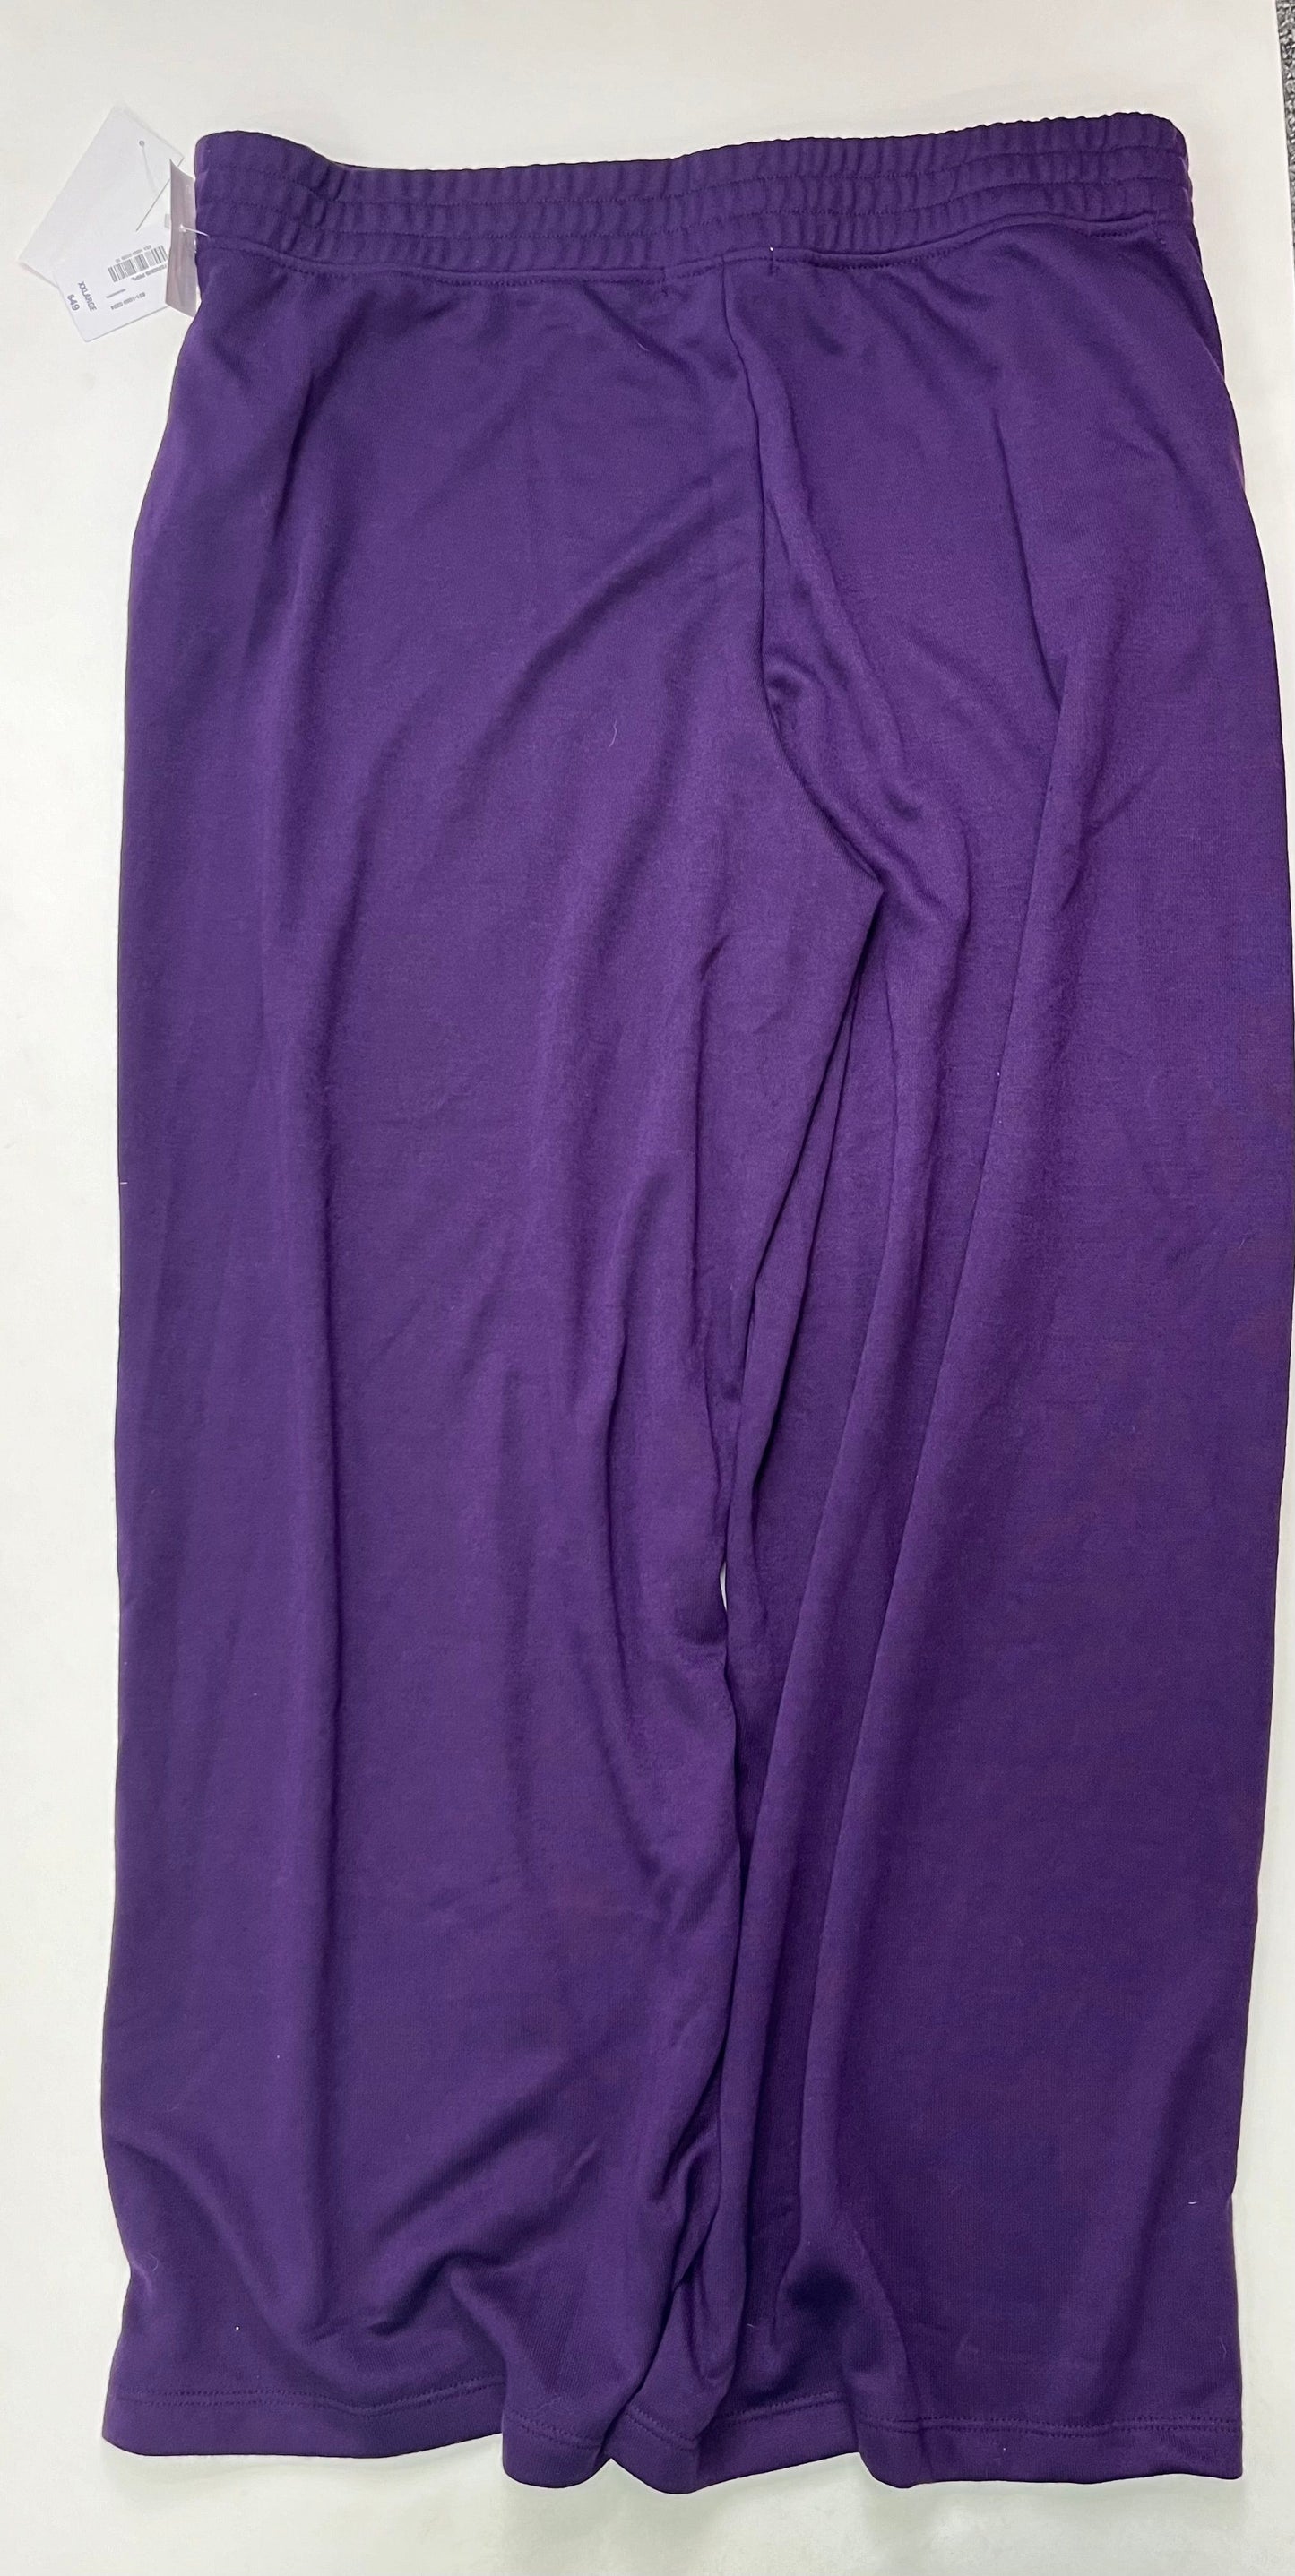 Pants Work/dress By Liz Claiborne  Size: 2x